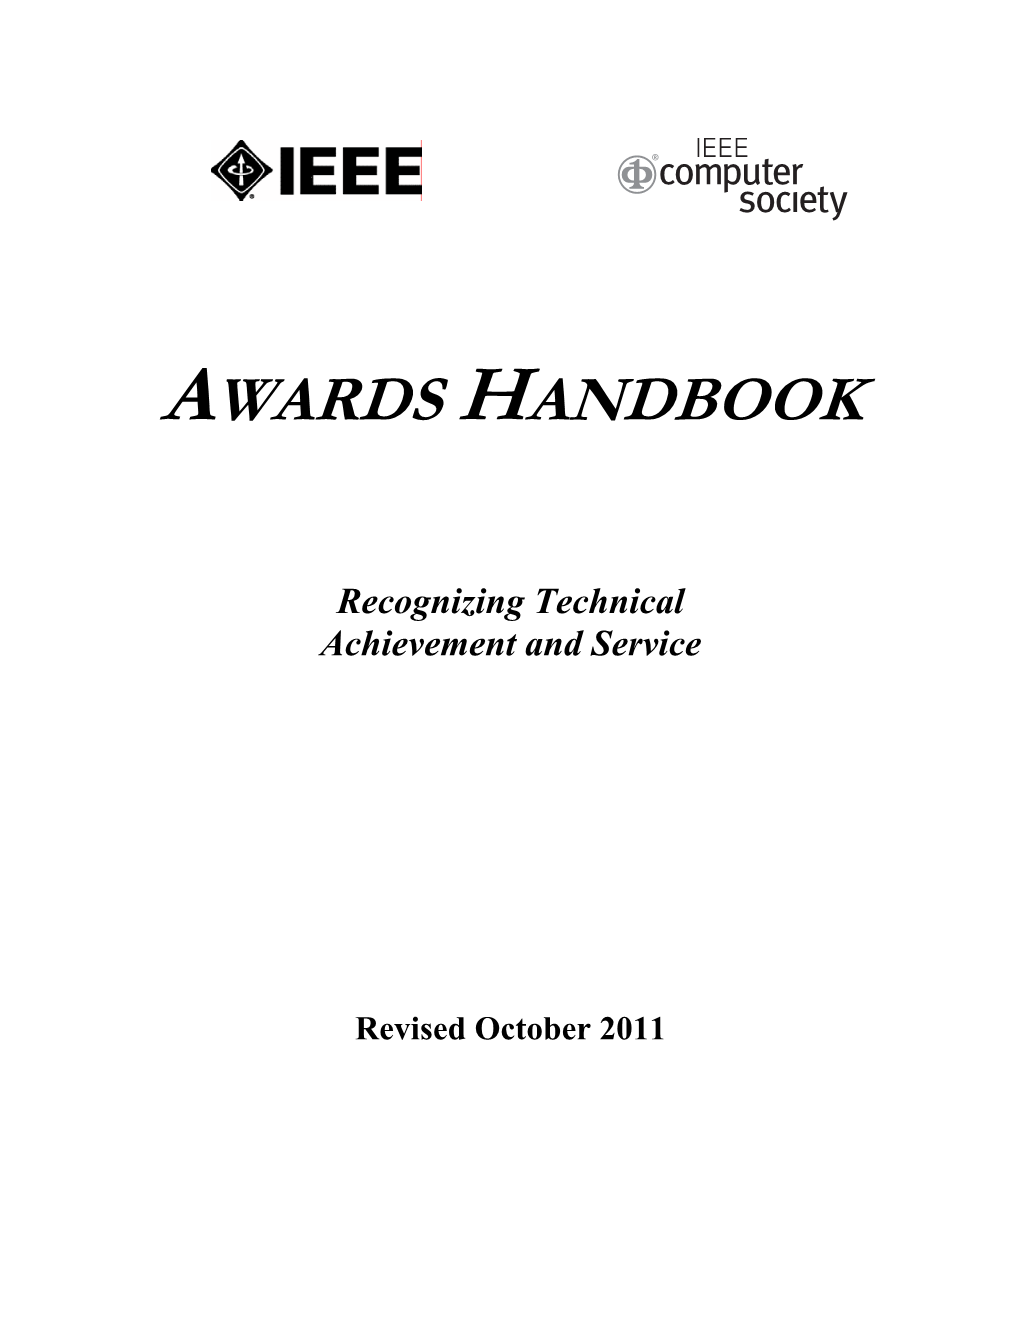 Awards Handbook